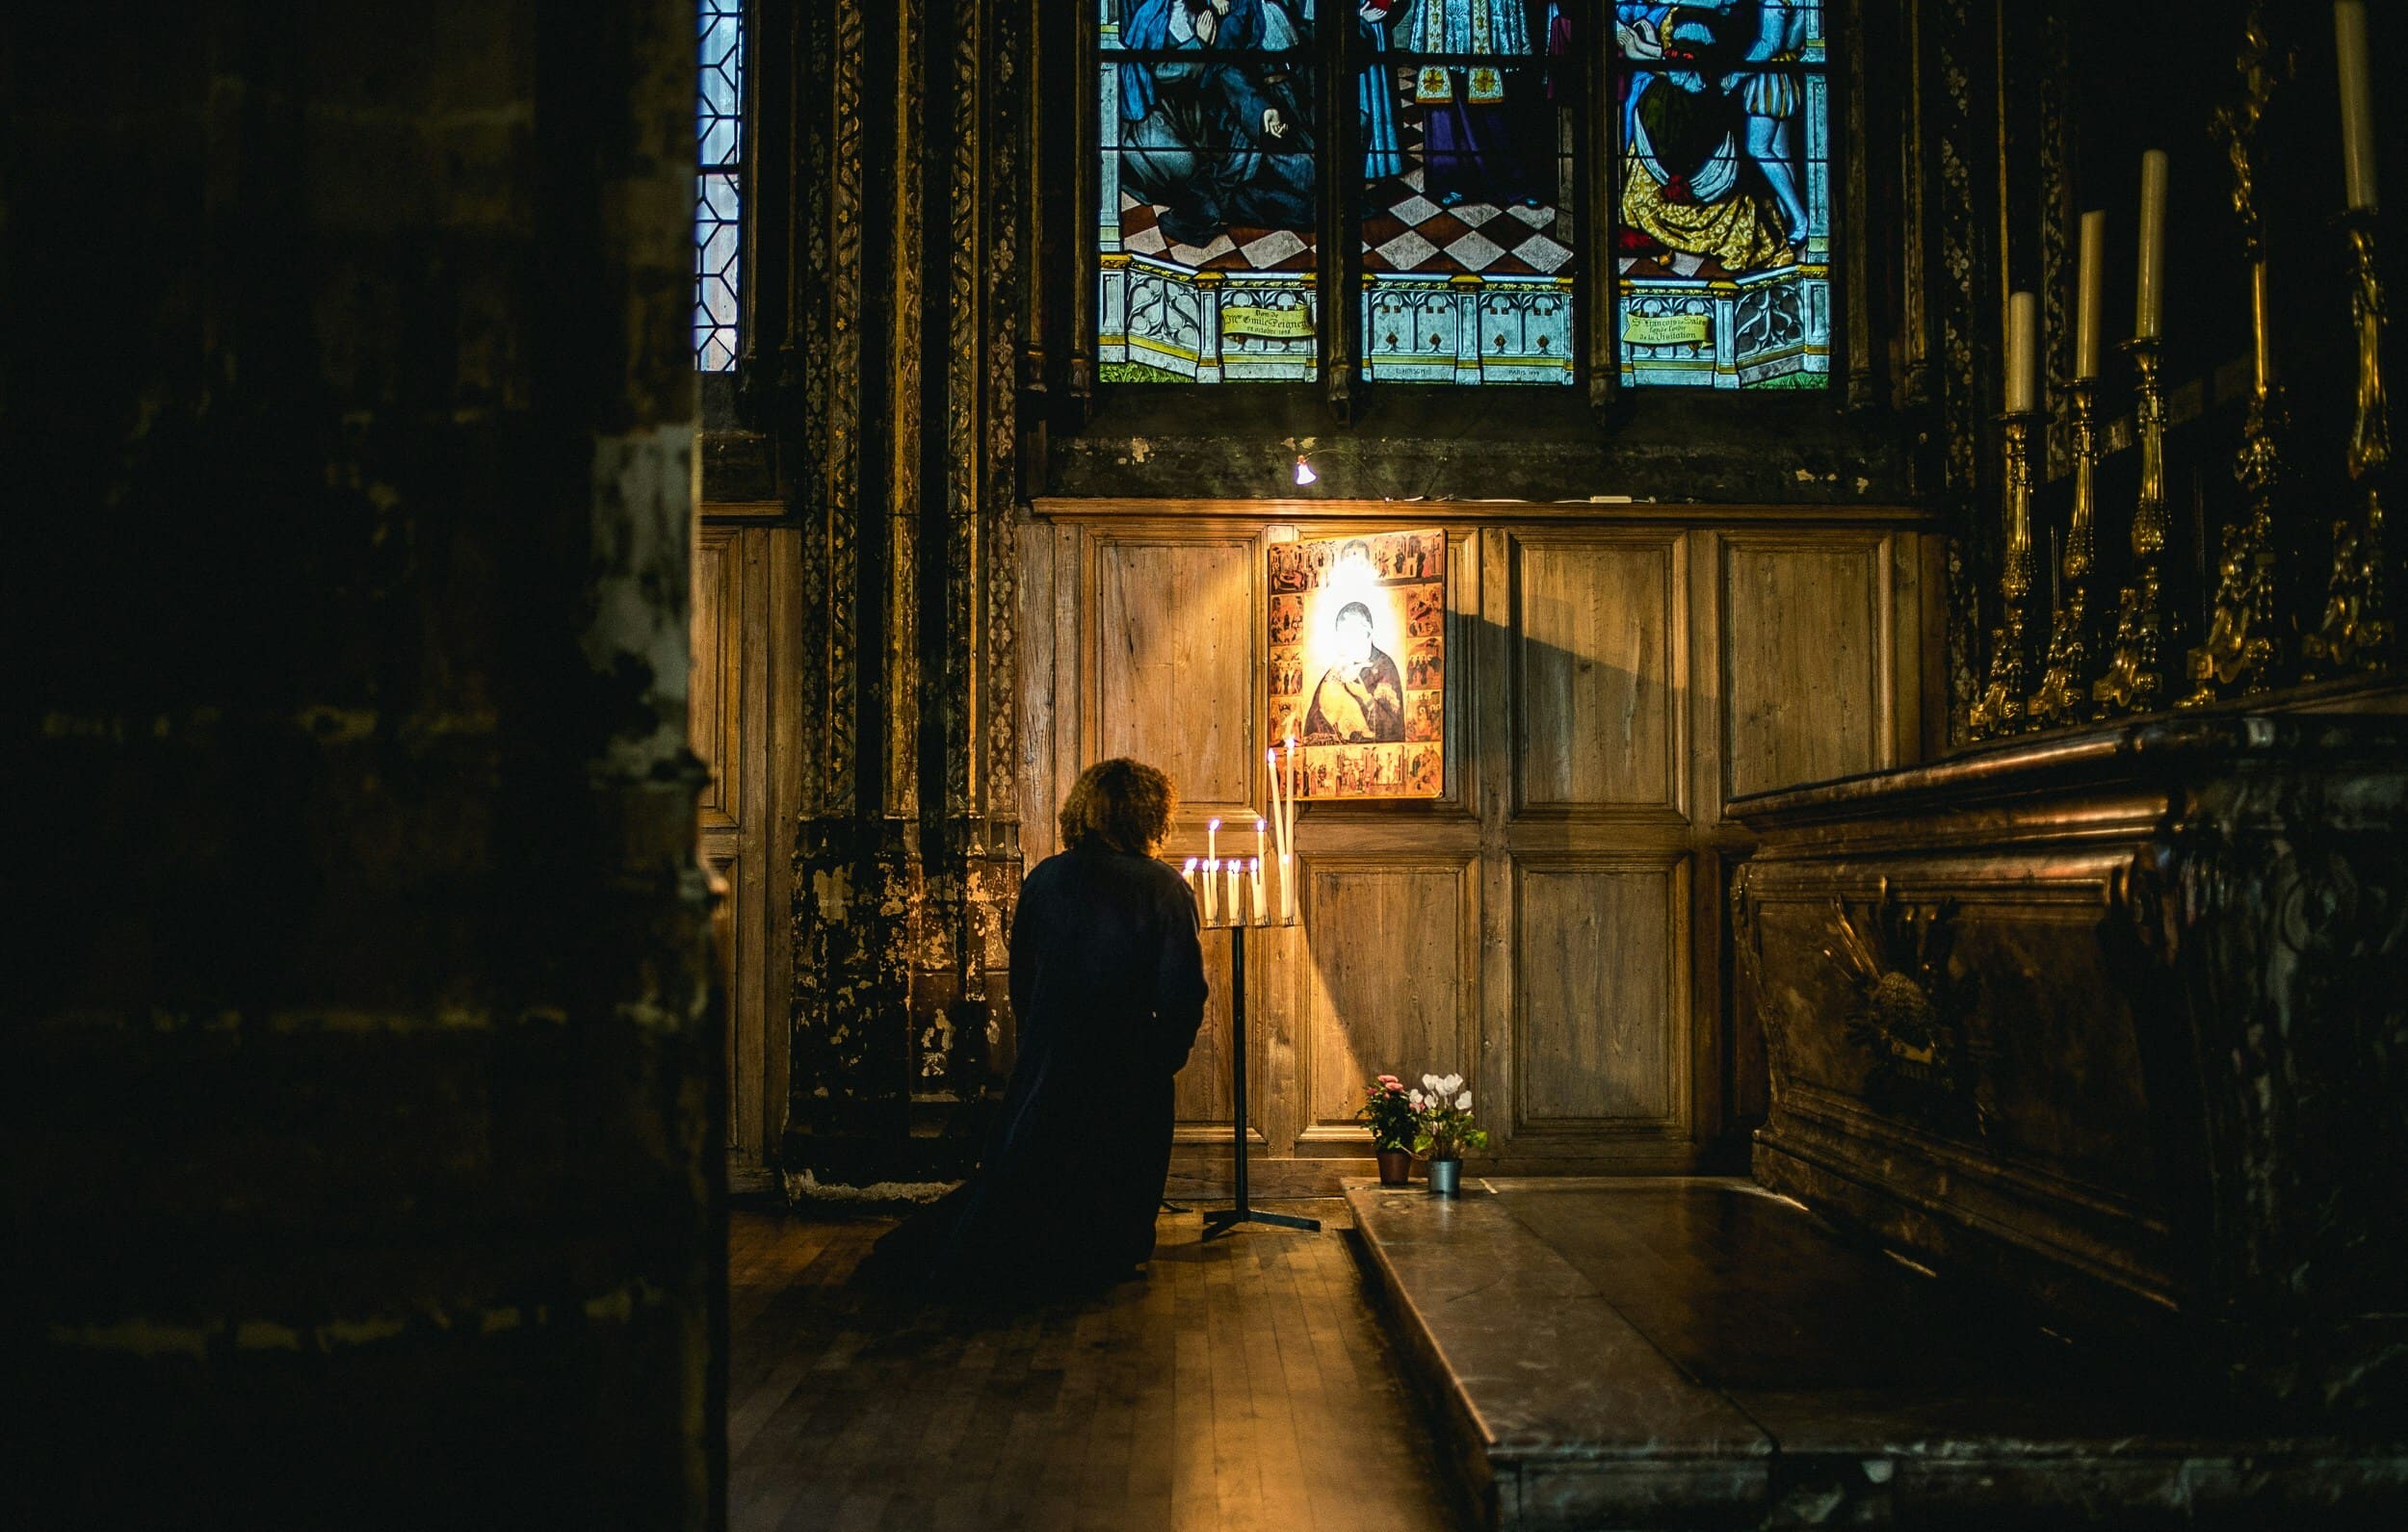 Fotografare interni chiese senza disturbare